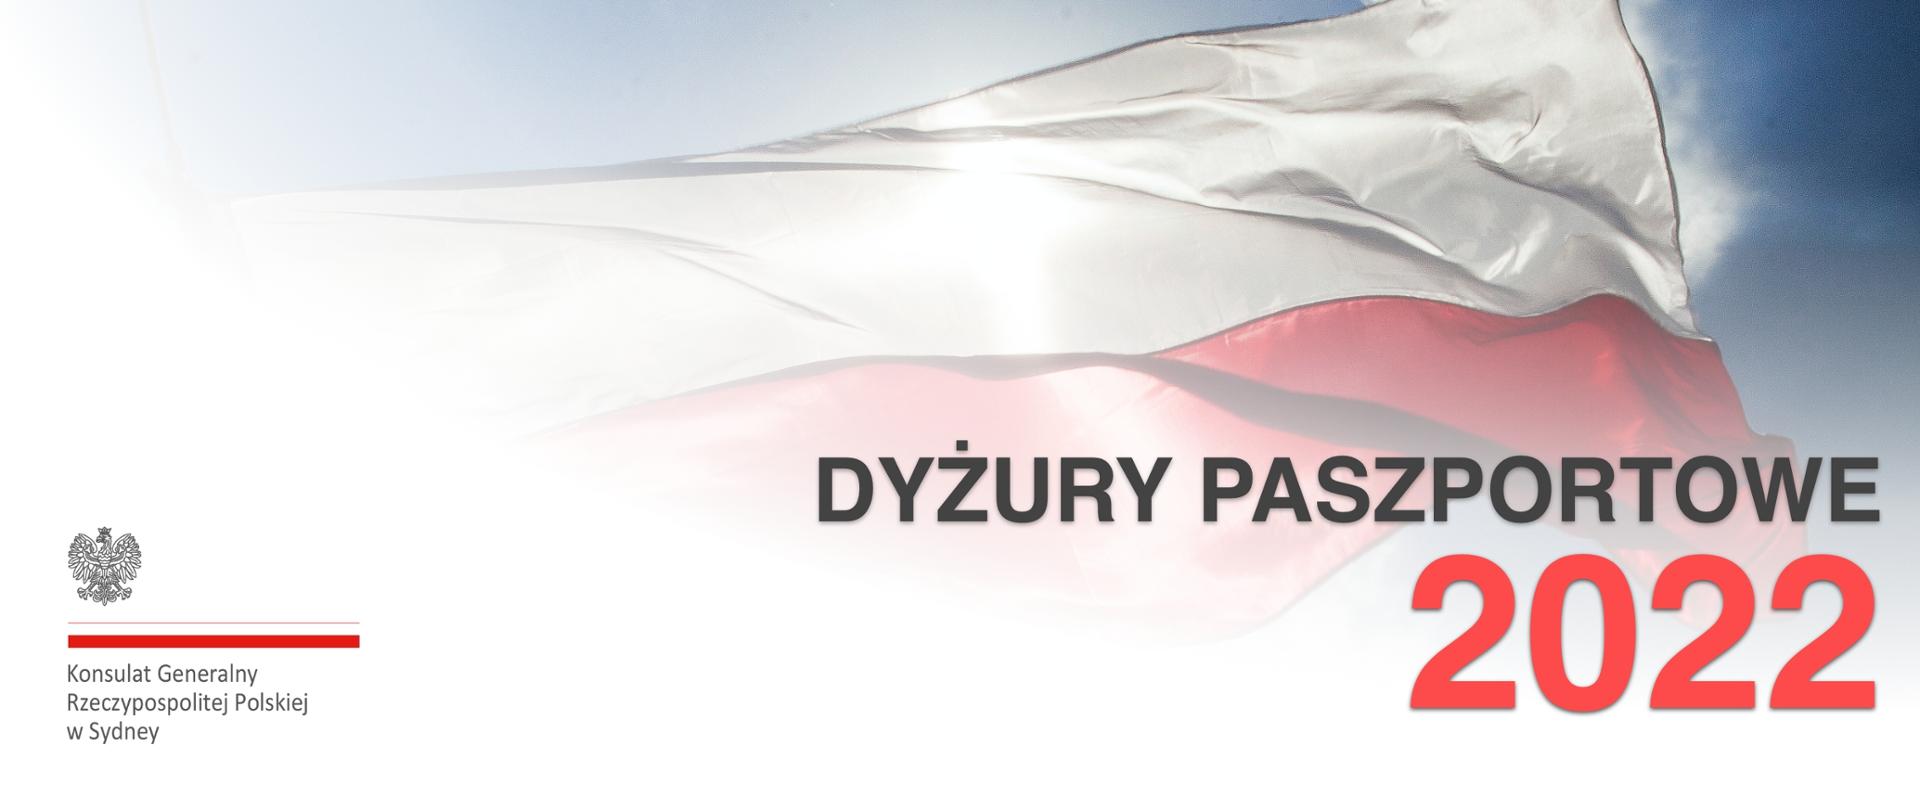 DYZURY_PASZPORTOWE_2022